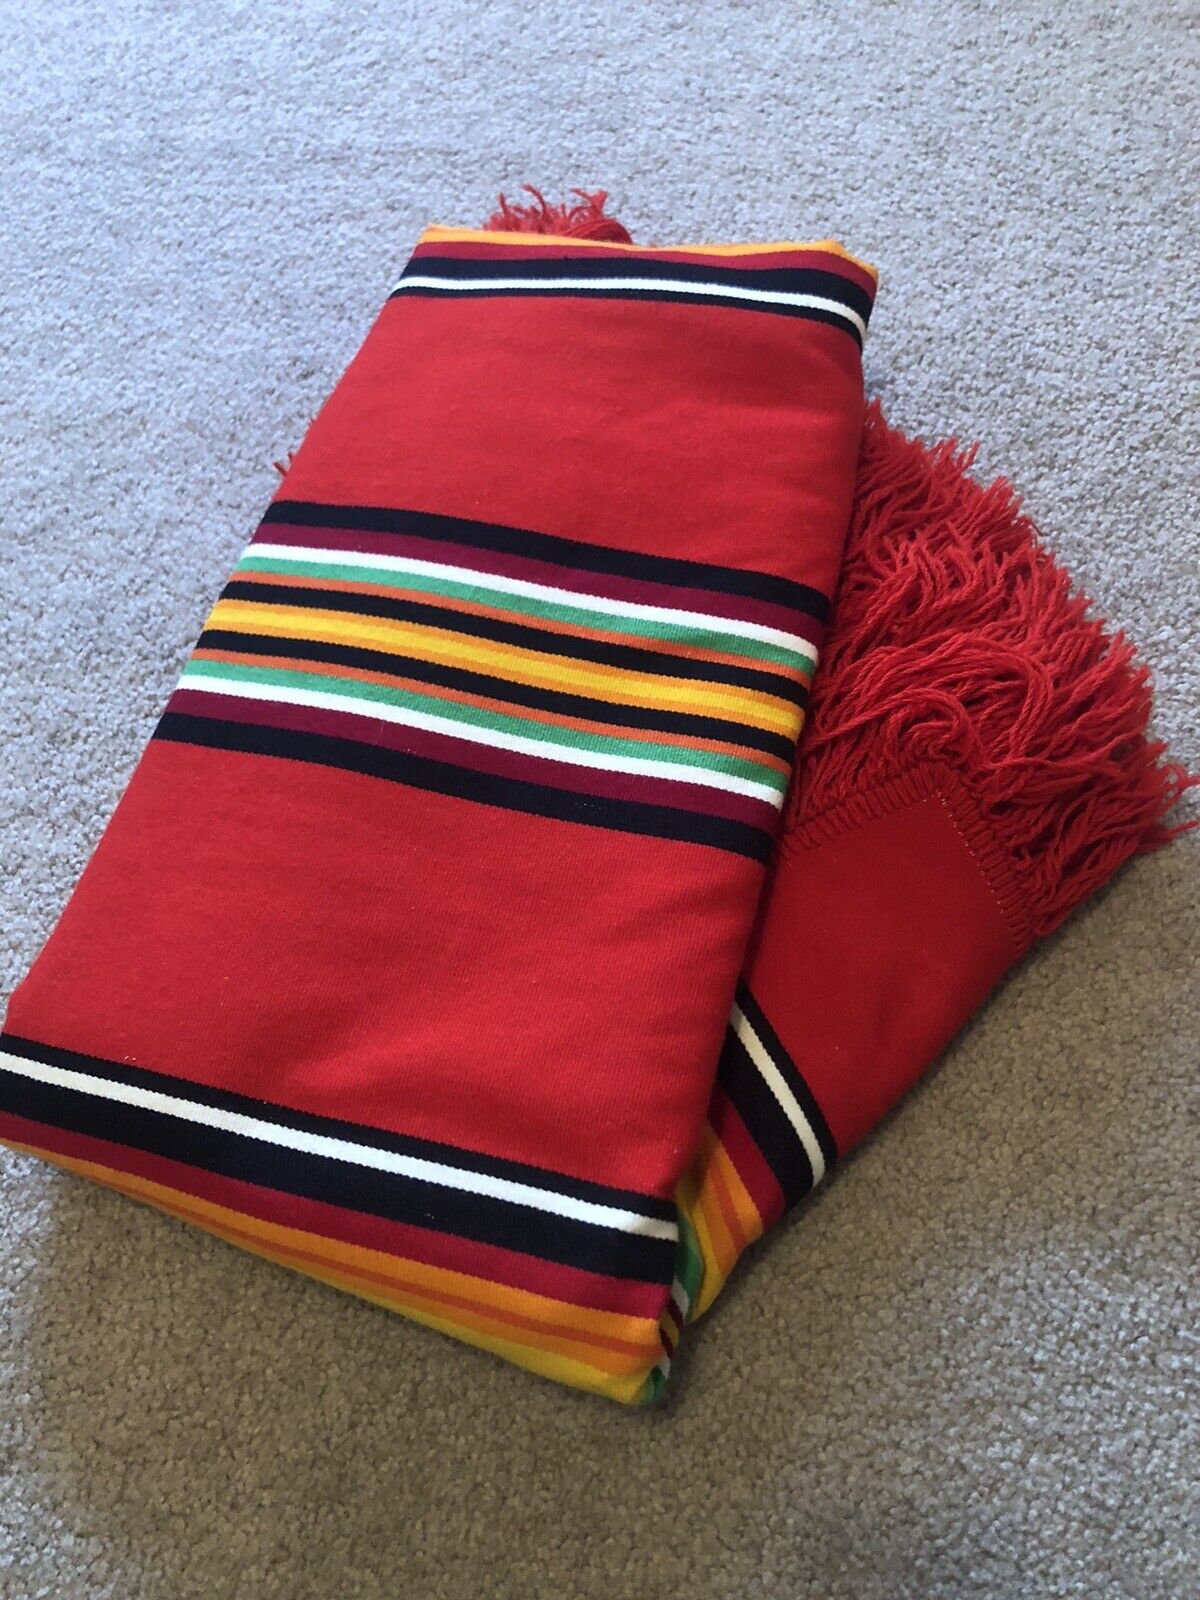 Vintage Pendleton Blanket Red Stripe Fringe Cabin Throw Antique Rare VGUC 64”